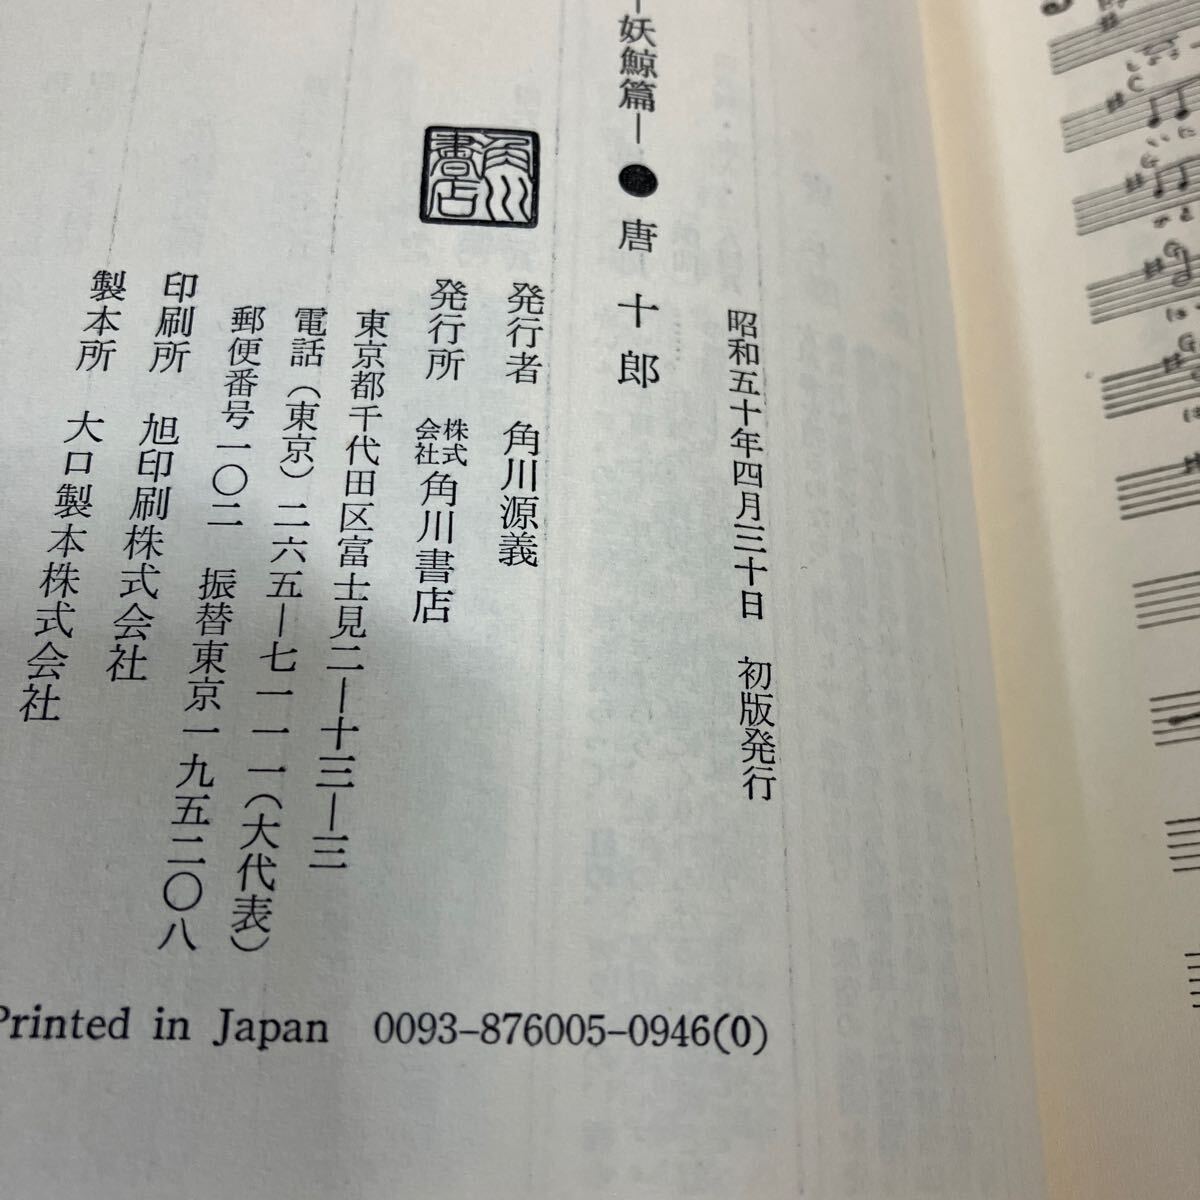 24-5-5[ поясница шт ......] Tang 10 . Showa 50 год первая версия Kadokawa Shoten 